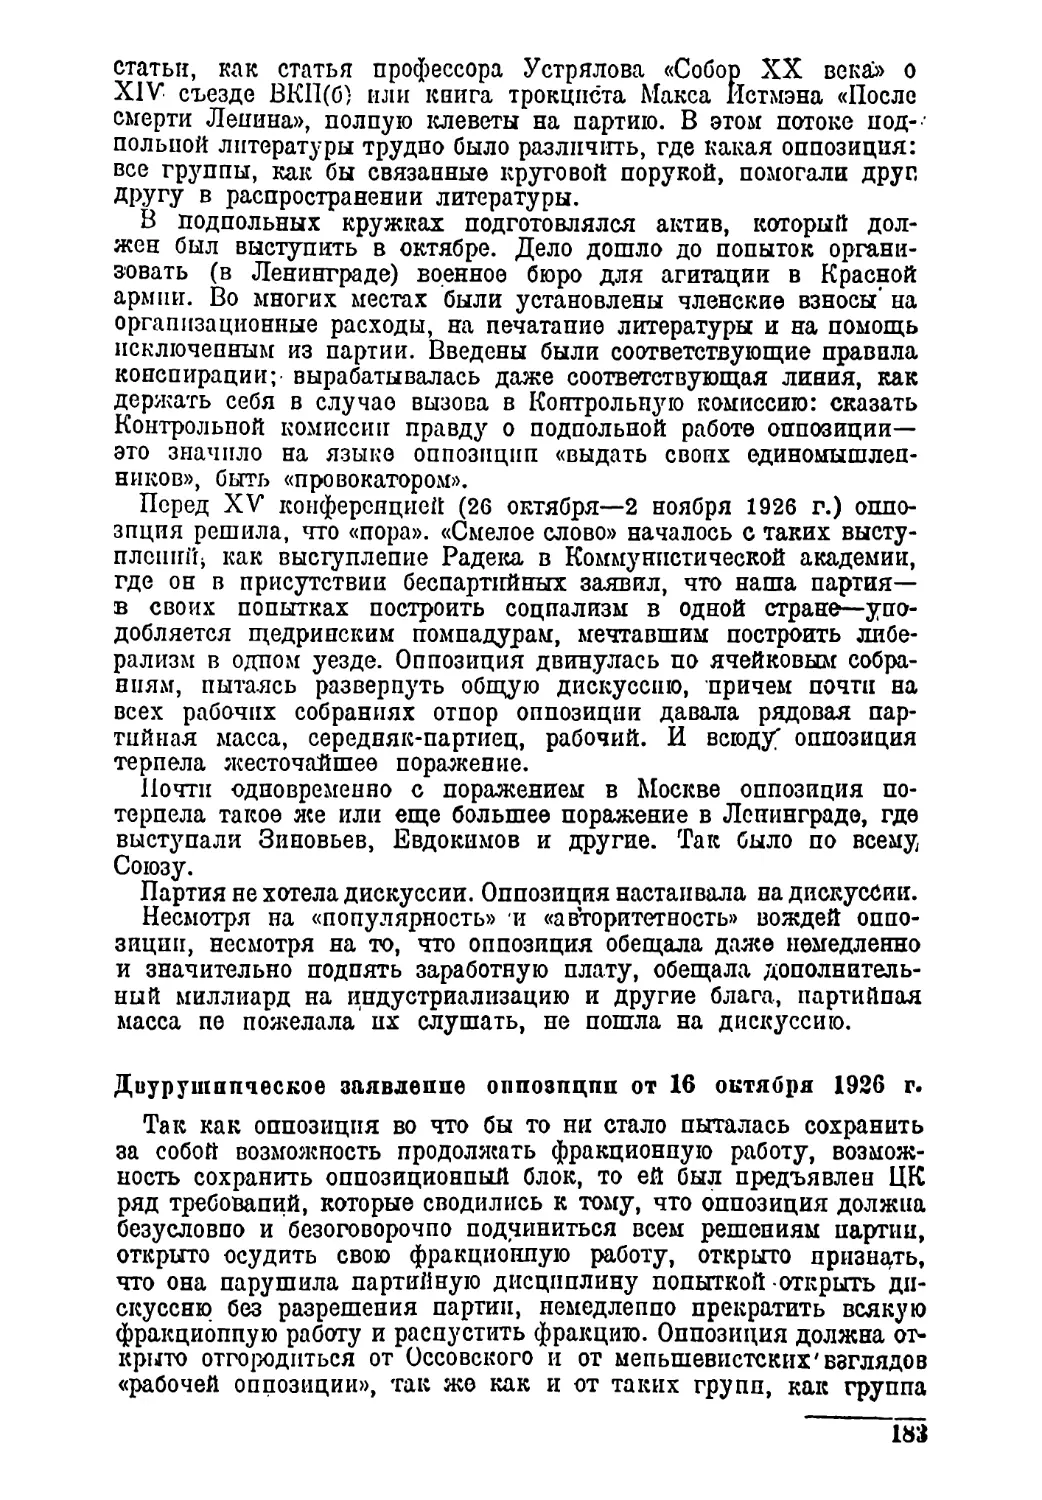 Двурушническое заявление оппозиции от 16 октября 1926 г.